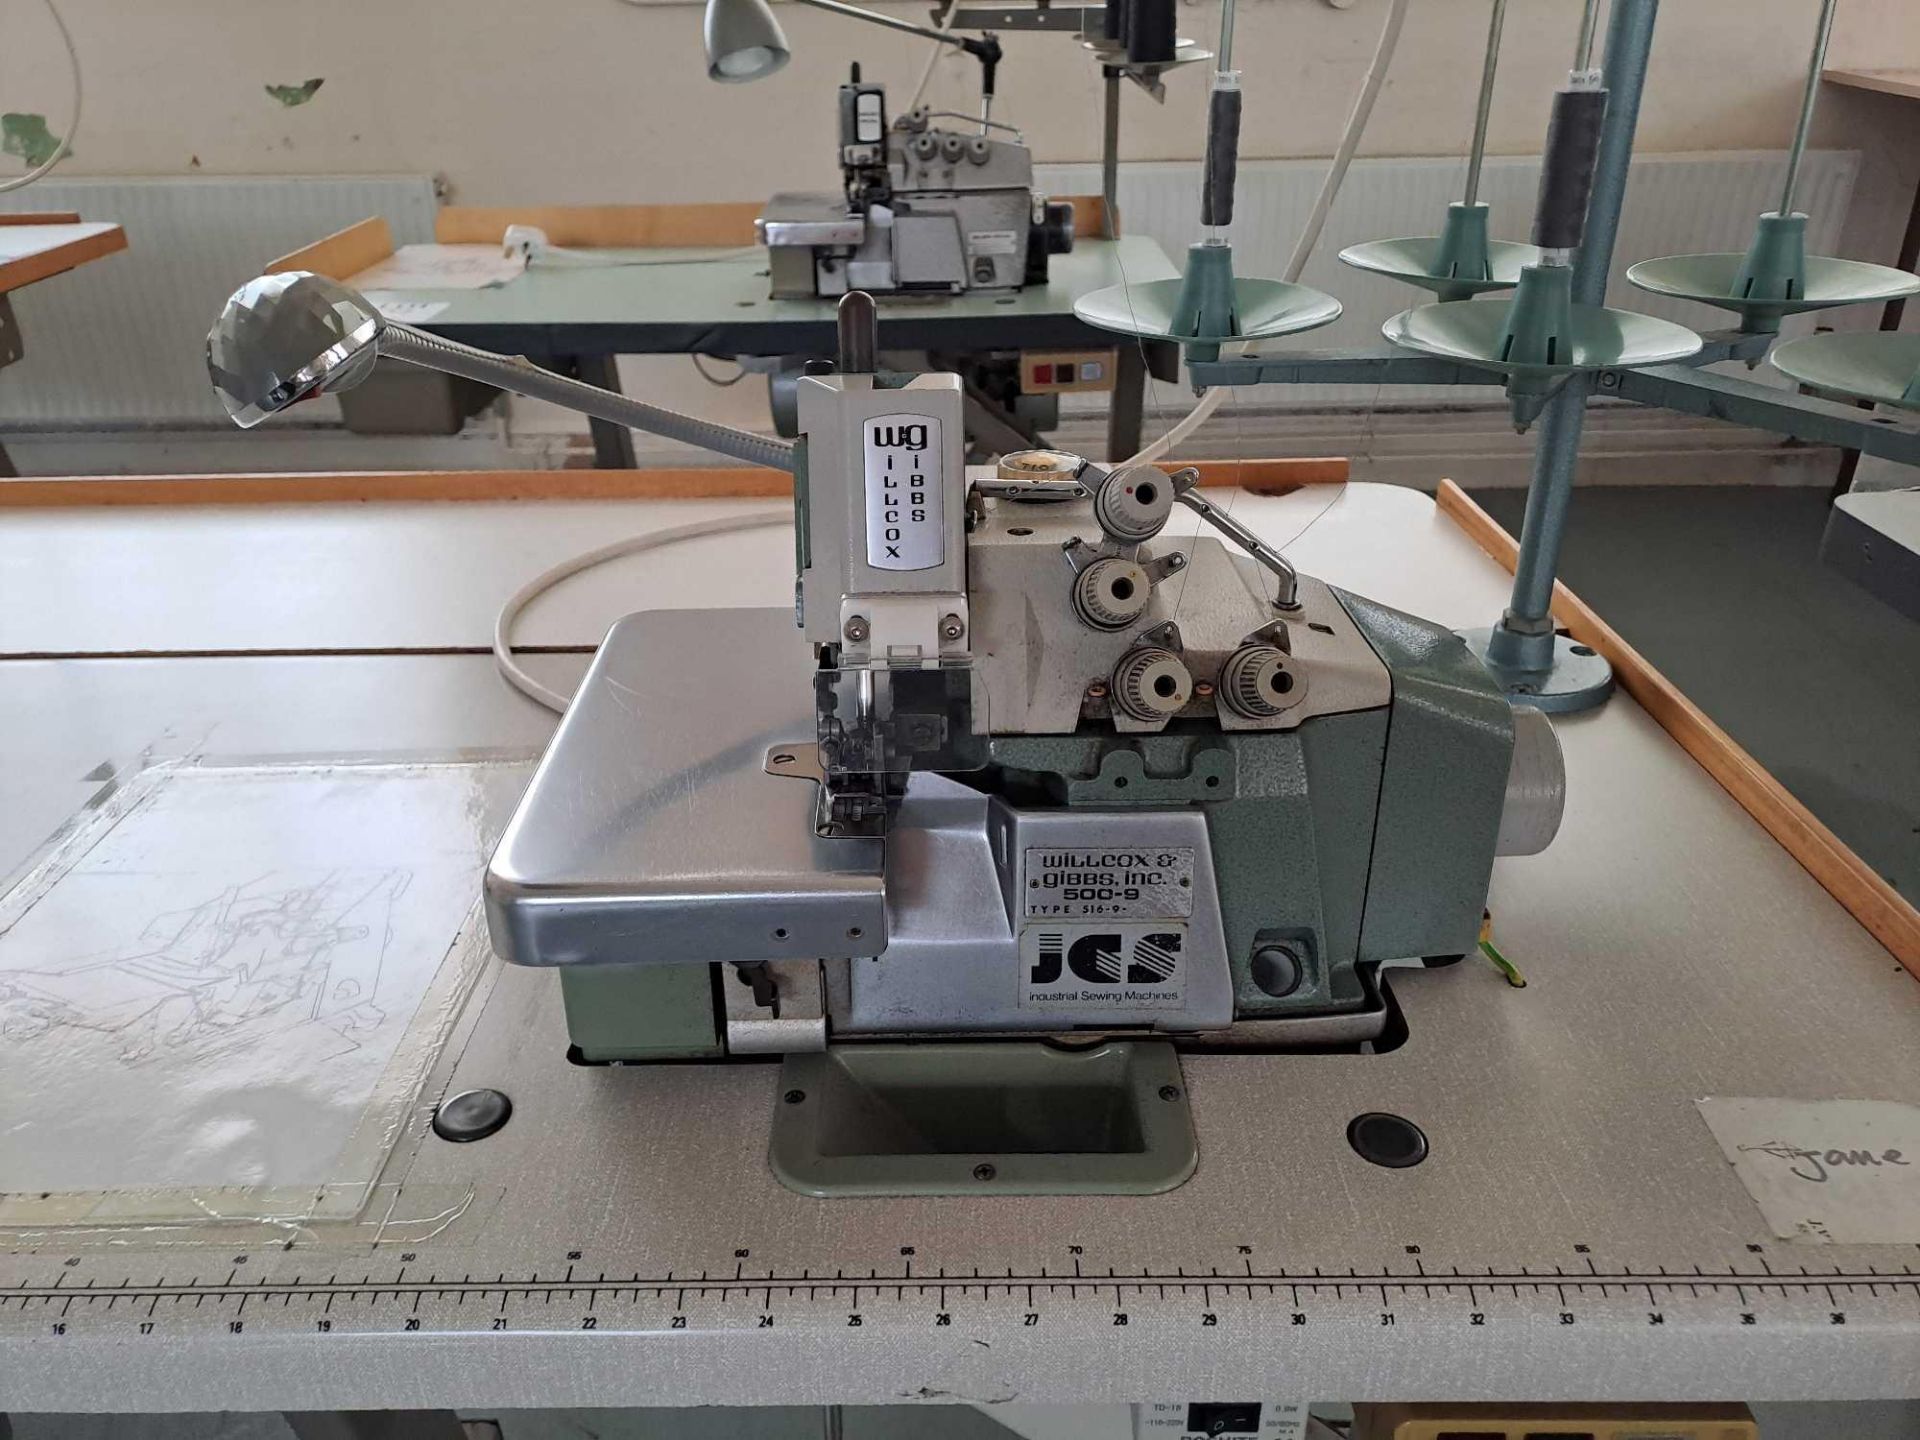 Willcox & Gibbs 500-9 Overlocker Sewing Machine - Image 3 of 7